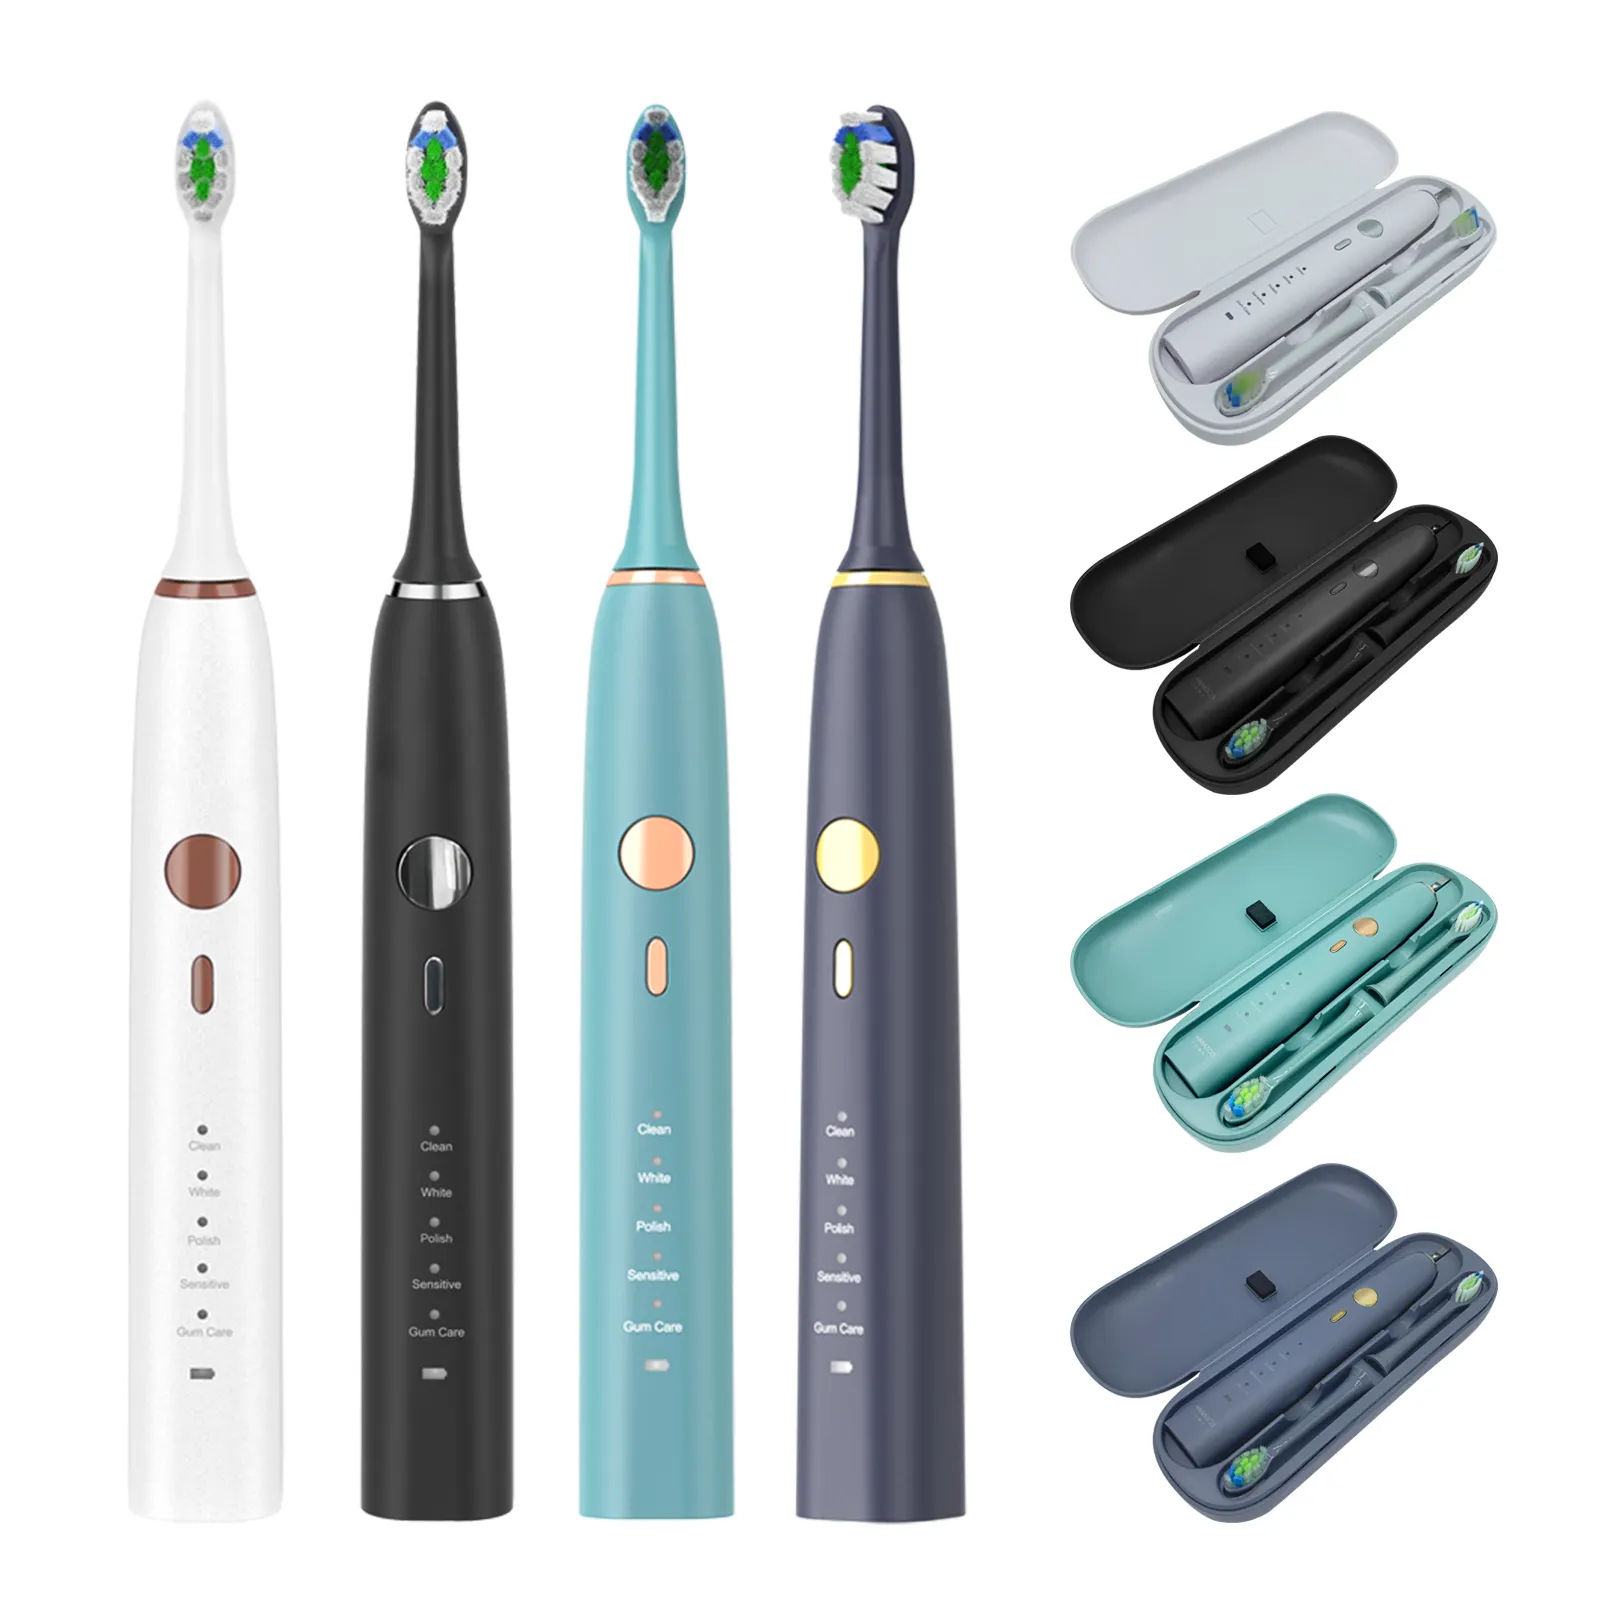 Yetişkin seyahat ev kullanılan profesyonel ucuz fiyat toplu elektrikli diş fırçası yumuşak fırçalar ile diş temiz Sonic elektrikli diş fırçası